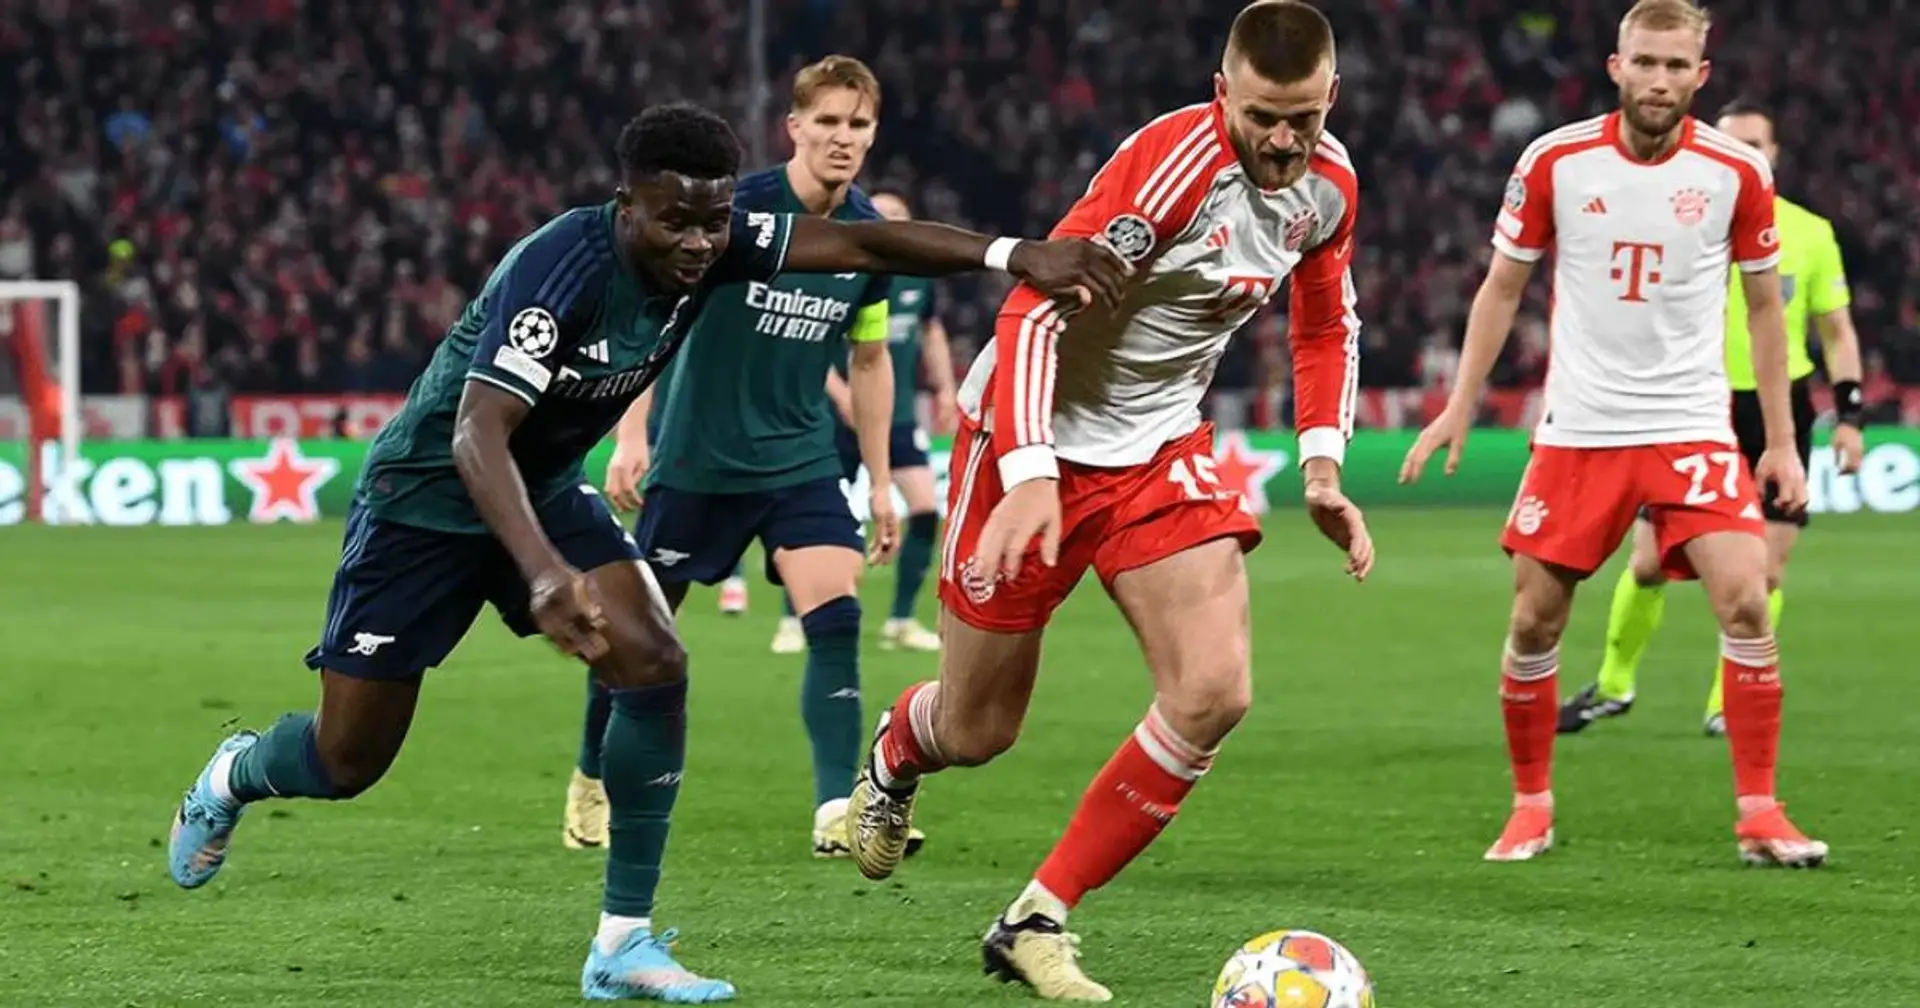 Saka - 4, Saliba - 7: Rating Arsenal players in frustrating Bayern loss